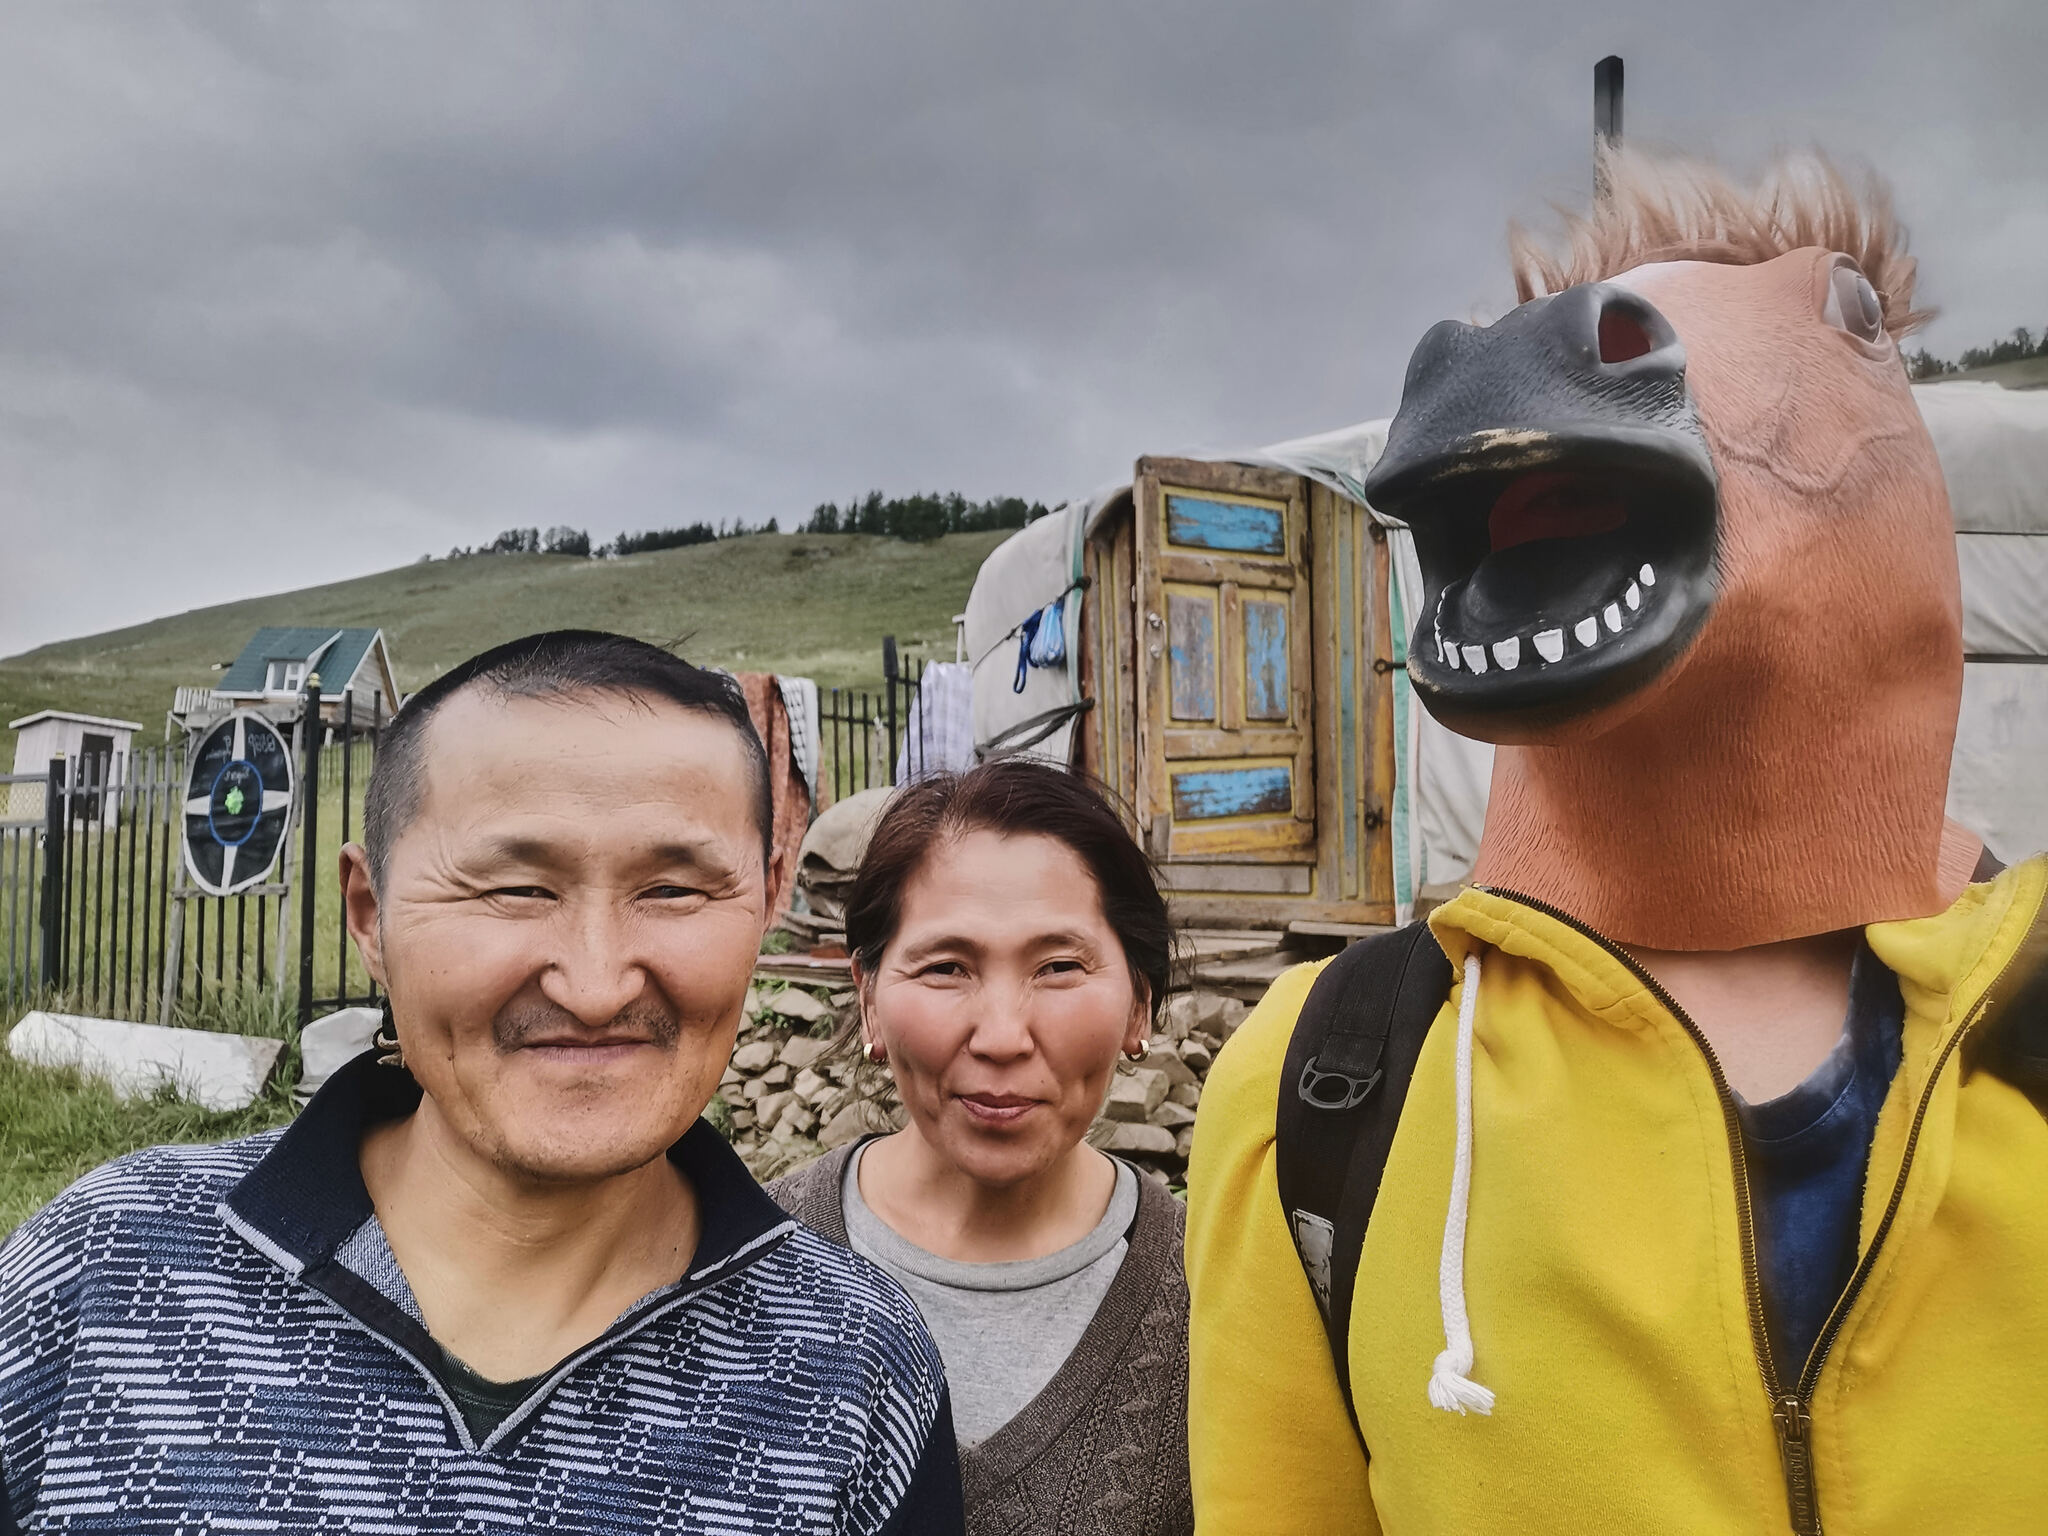 Монгольское порно в юрте проверка на квалификацию с помощью вибратора и вибрамы